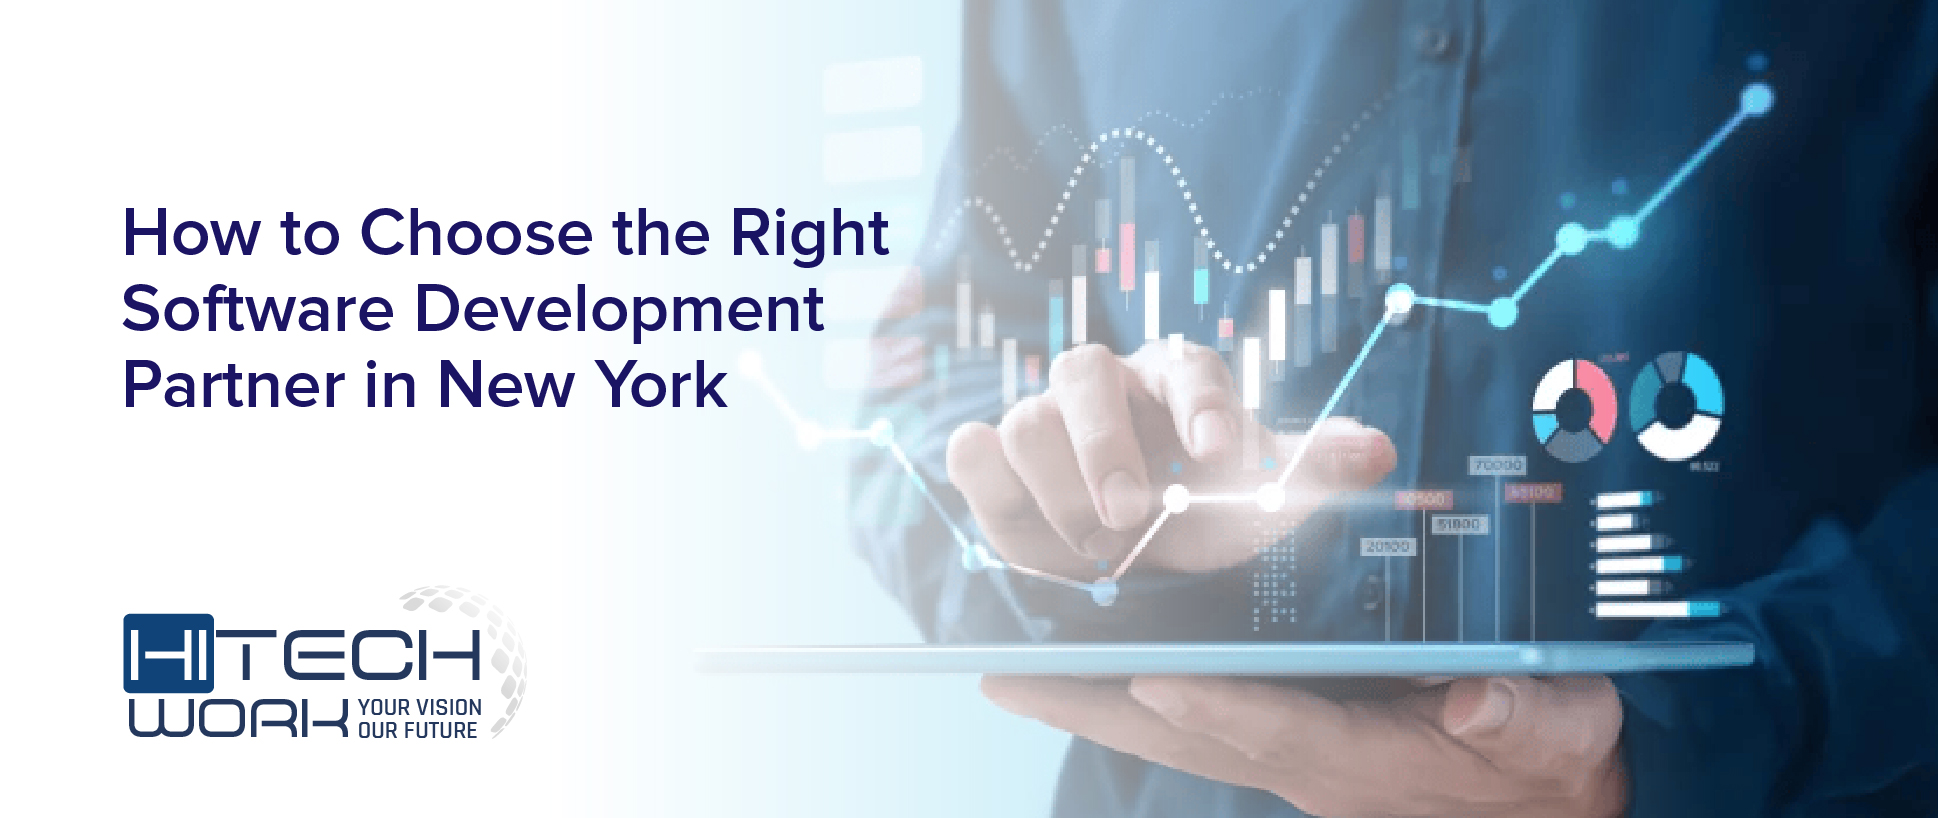 Development Partner in New York